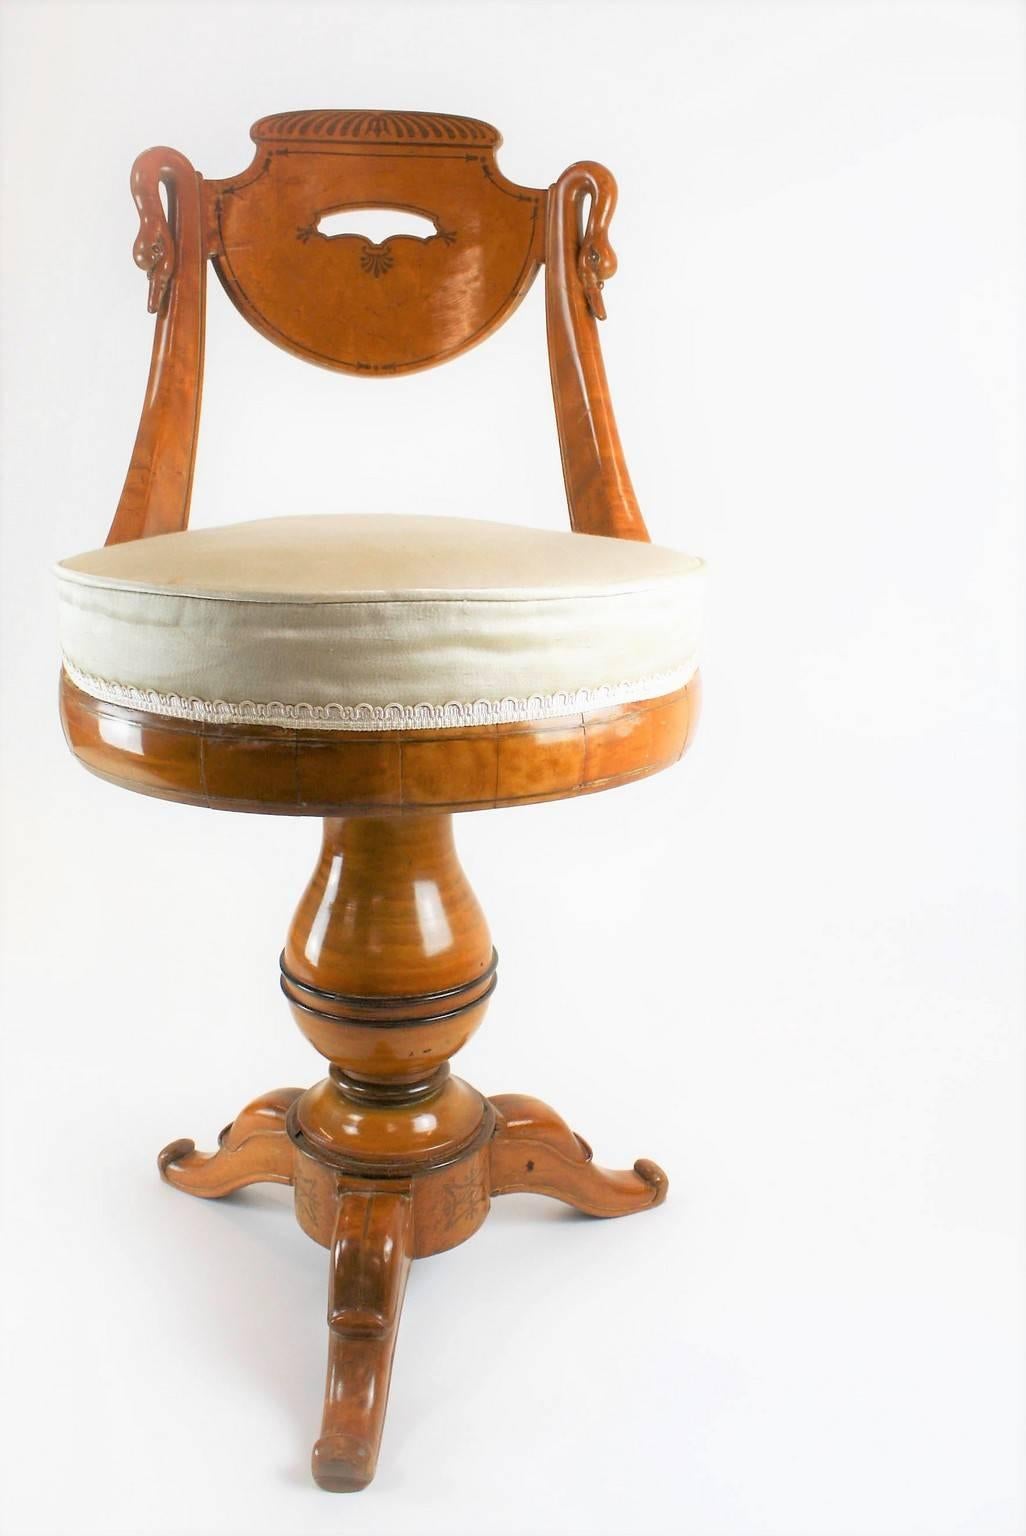 Exquise et rare chaise pivotante française Charles X - Restauration Harpist en bois d'érable massif avec filets d'amarante.
Motif col de cygne dans le dos, motif feuille de palmier composé de feuilles stylisées et d'arabesques florales, autour du